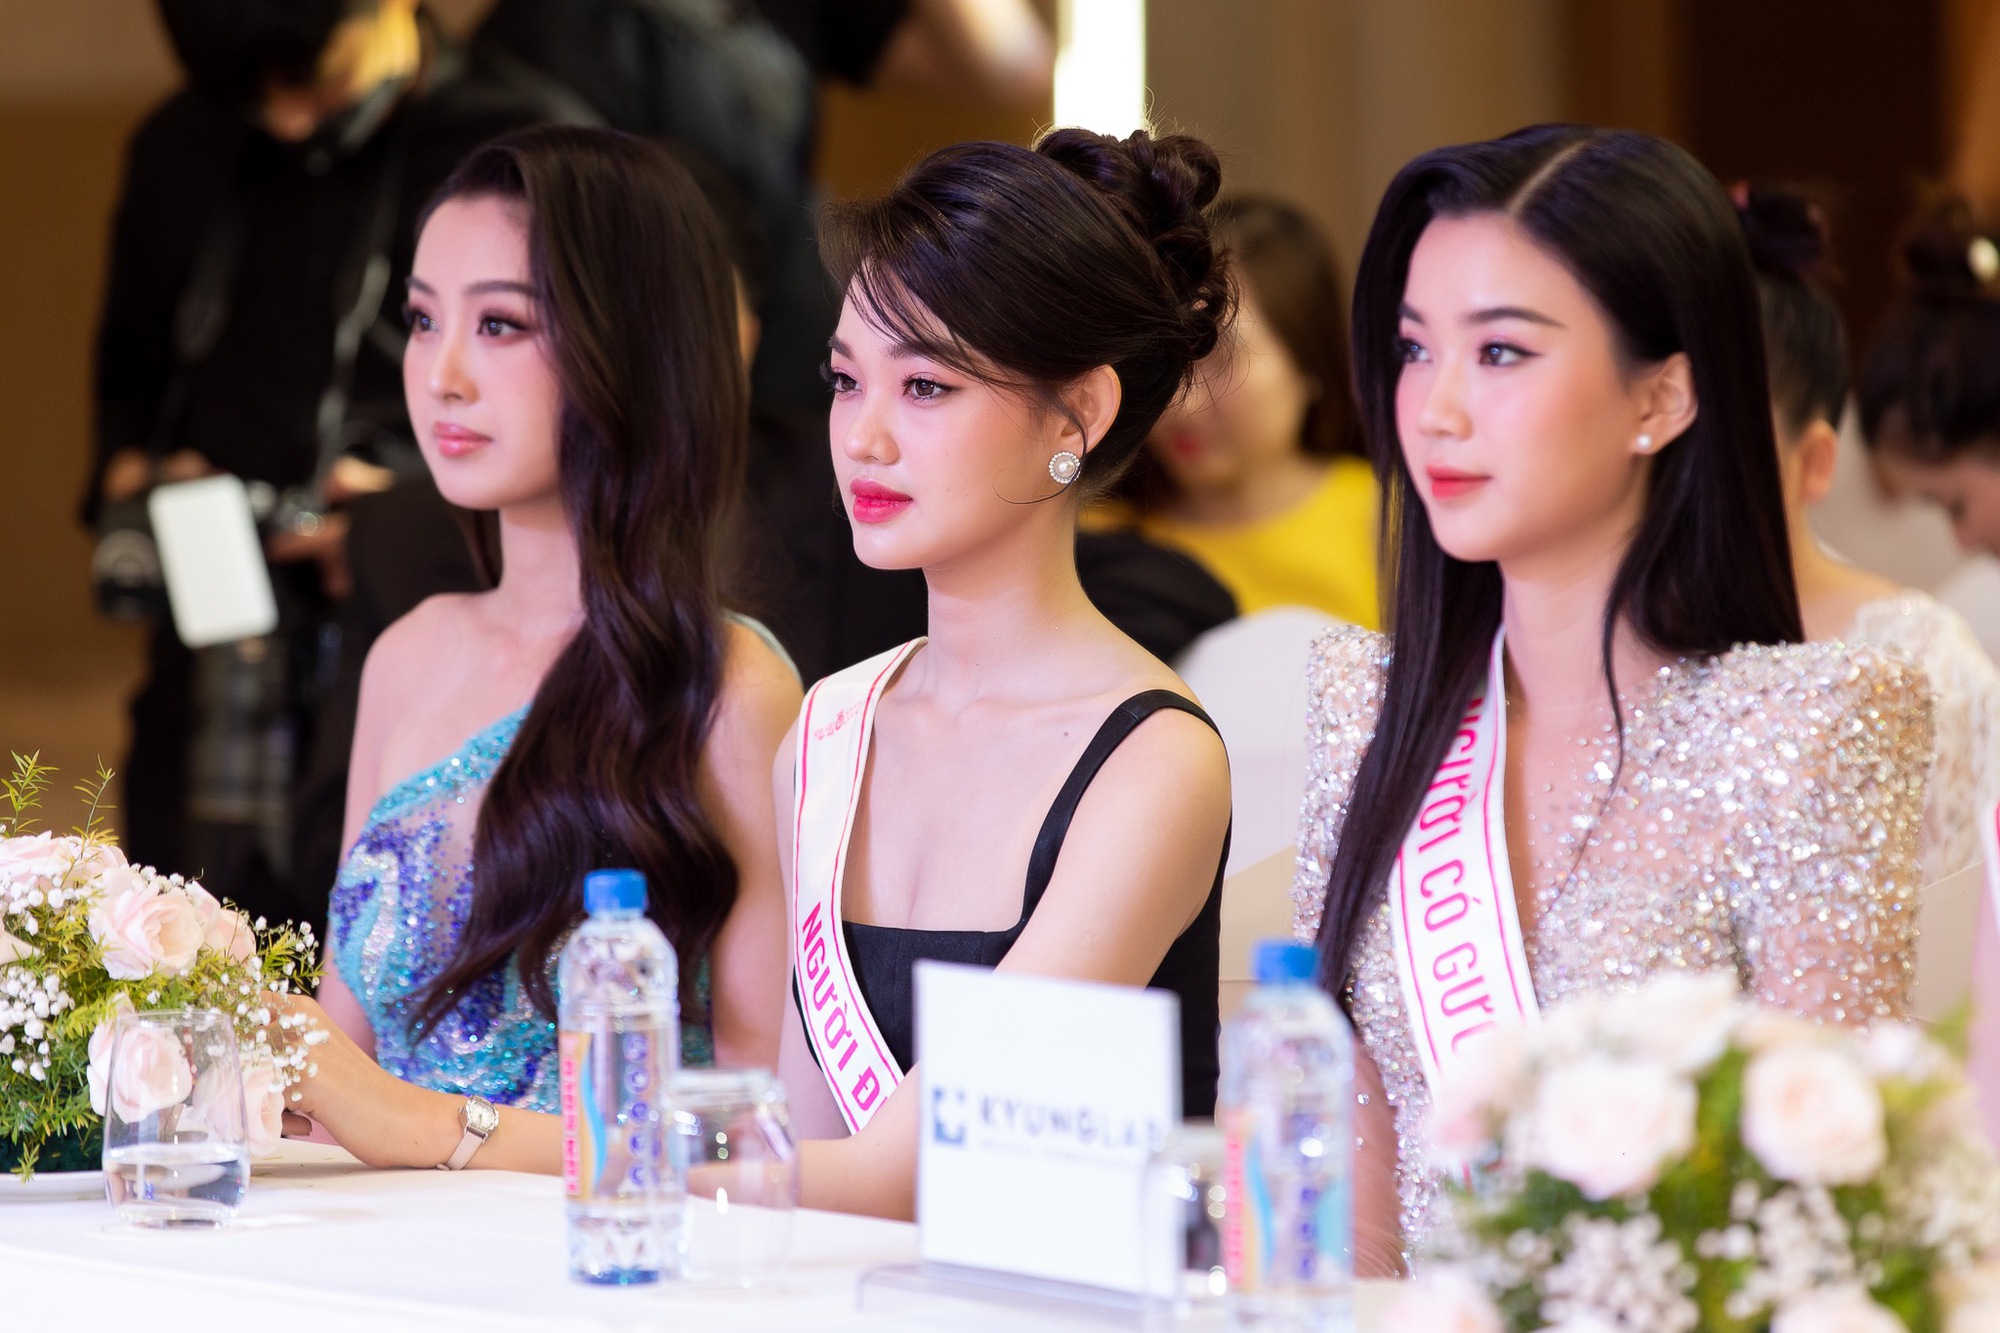 Họp báo sau đăng quang của Top 3 Hoa hậu Việt Nam: Á hậu 1 lên tiếng khi bị so sánh, 1 người đẹp có hành động gây tranh cãi - Ảnh 9.